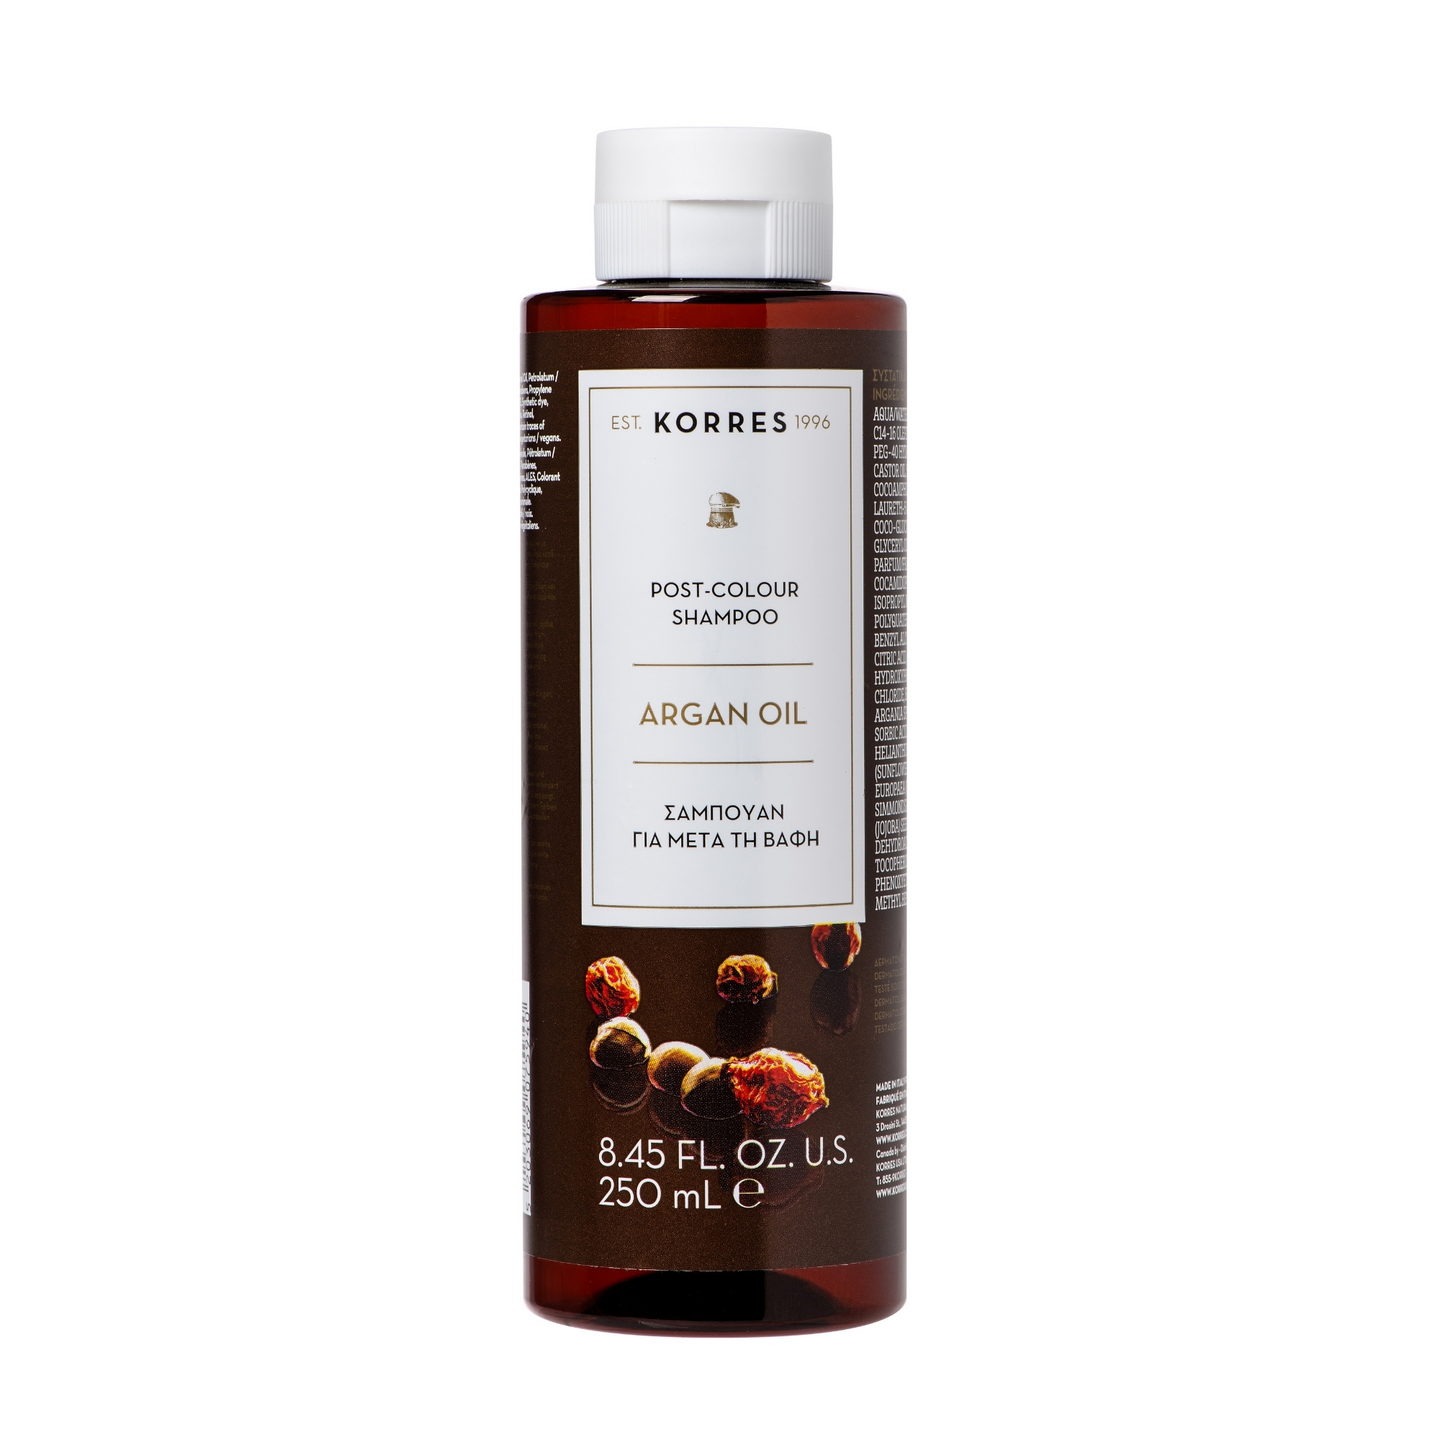 Korres shampoo 250ml Argan Oil Post-Colour väriä suojaava ja kosteuttava shampoo värjätyille hiuksil